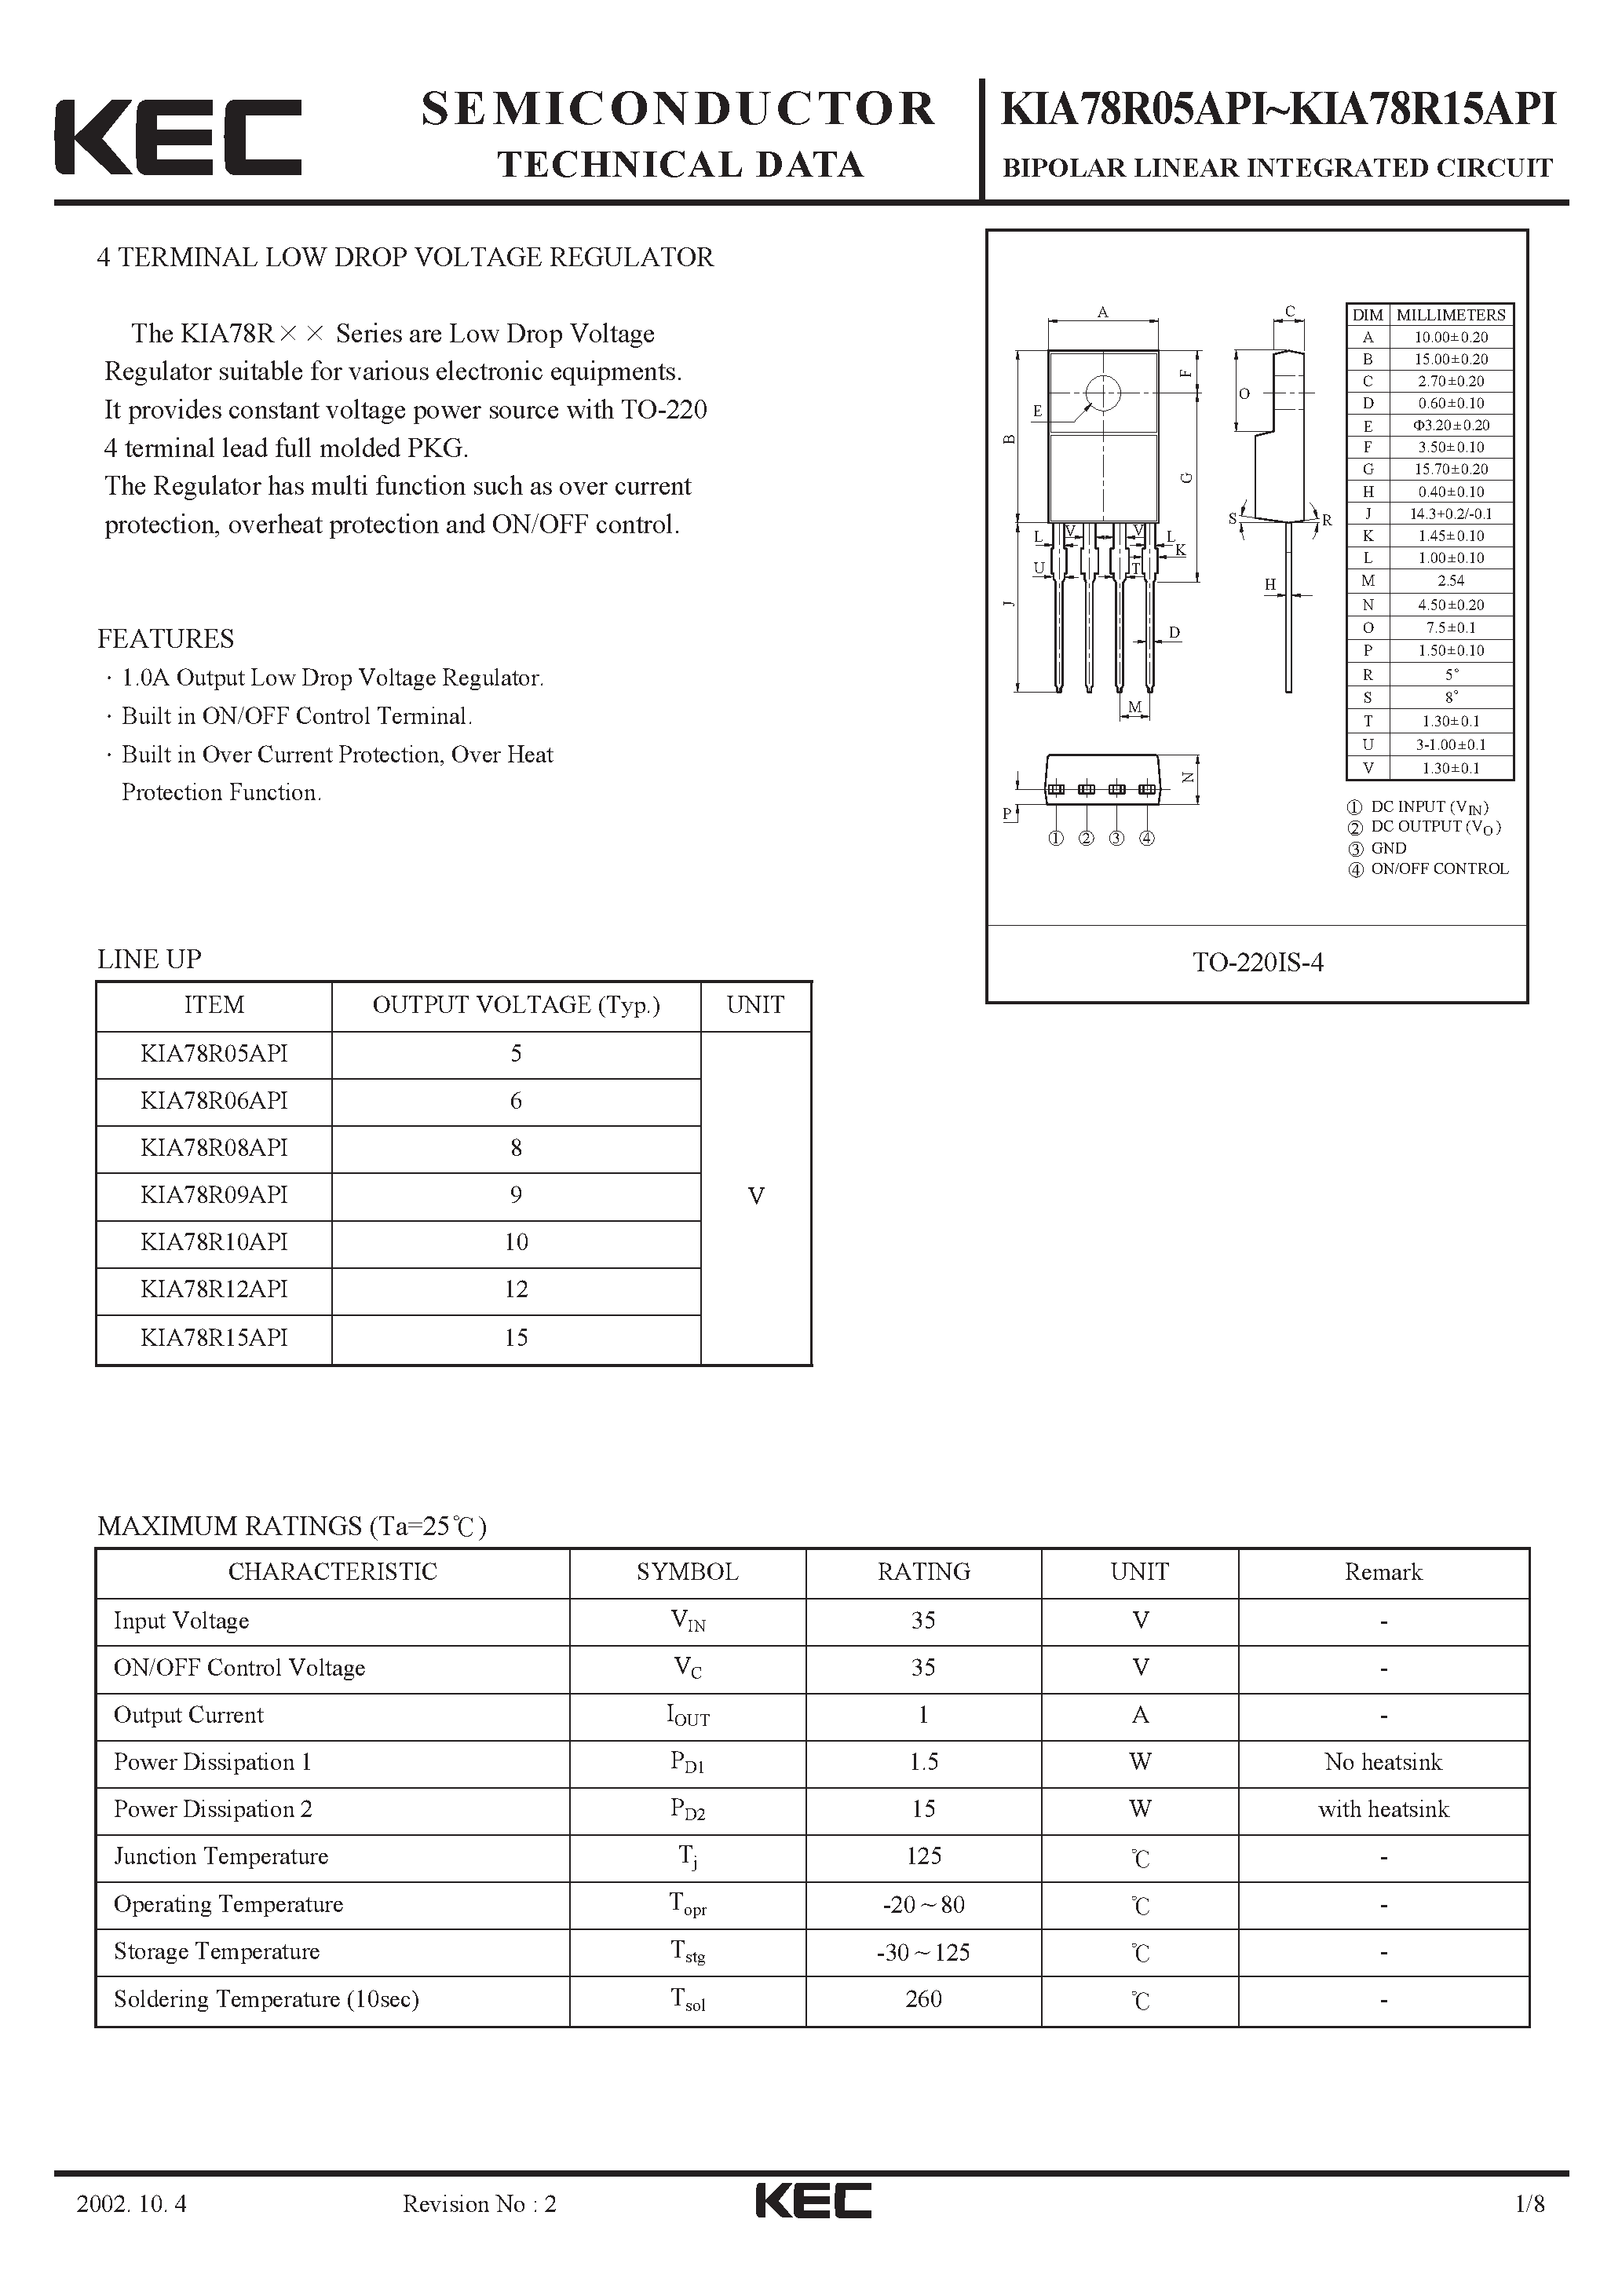 Datasheet KIA78R06API - BIPOLAR LINEAR INTEGRATED CIRCUIT (4 TERMINAL LOW DROP VOLTAGE REGULATOR) page 1